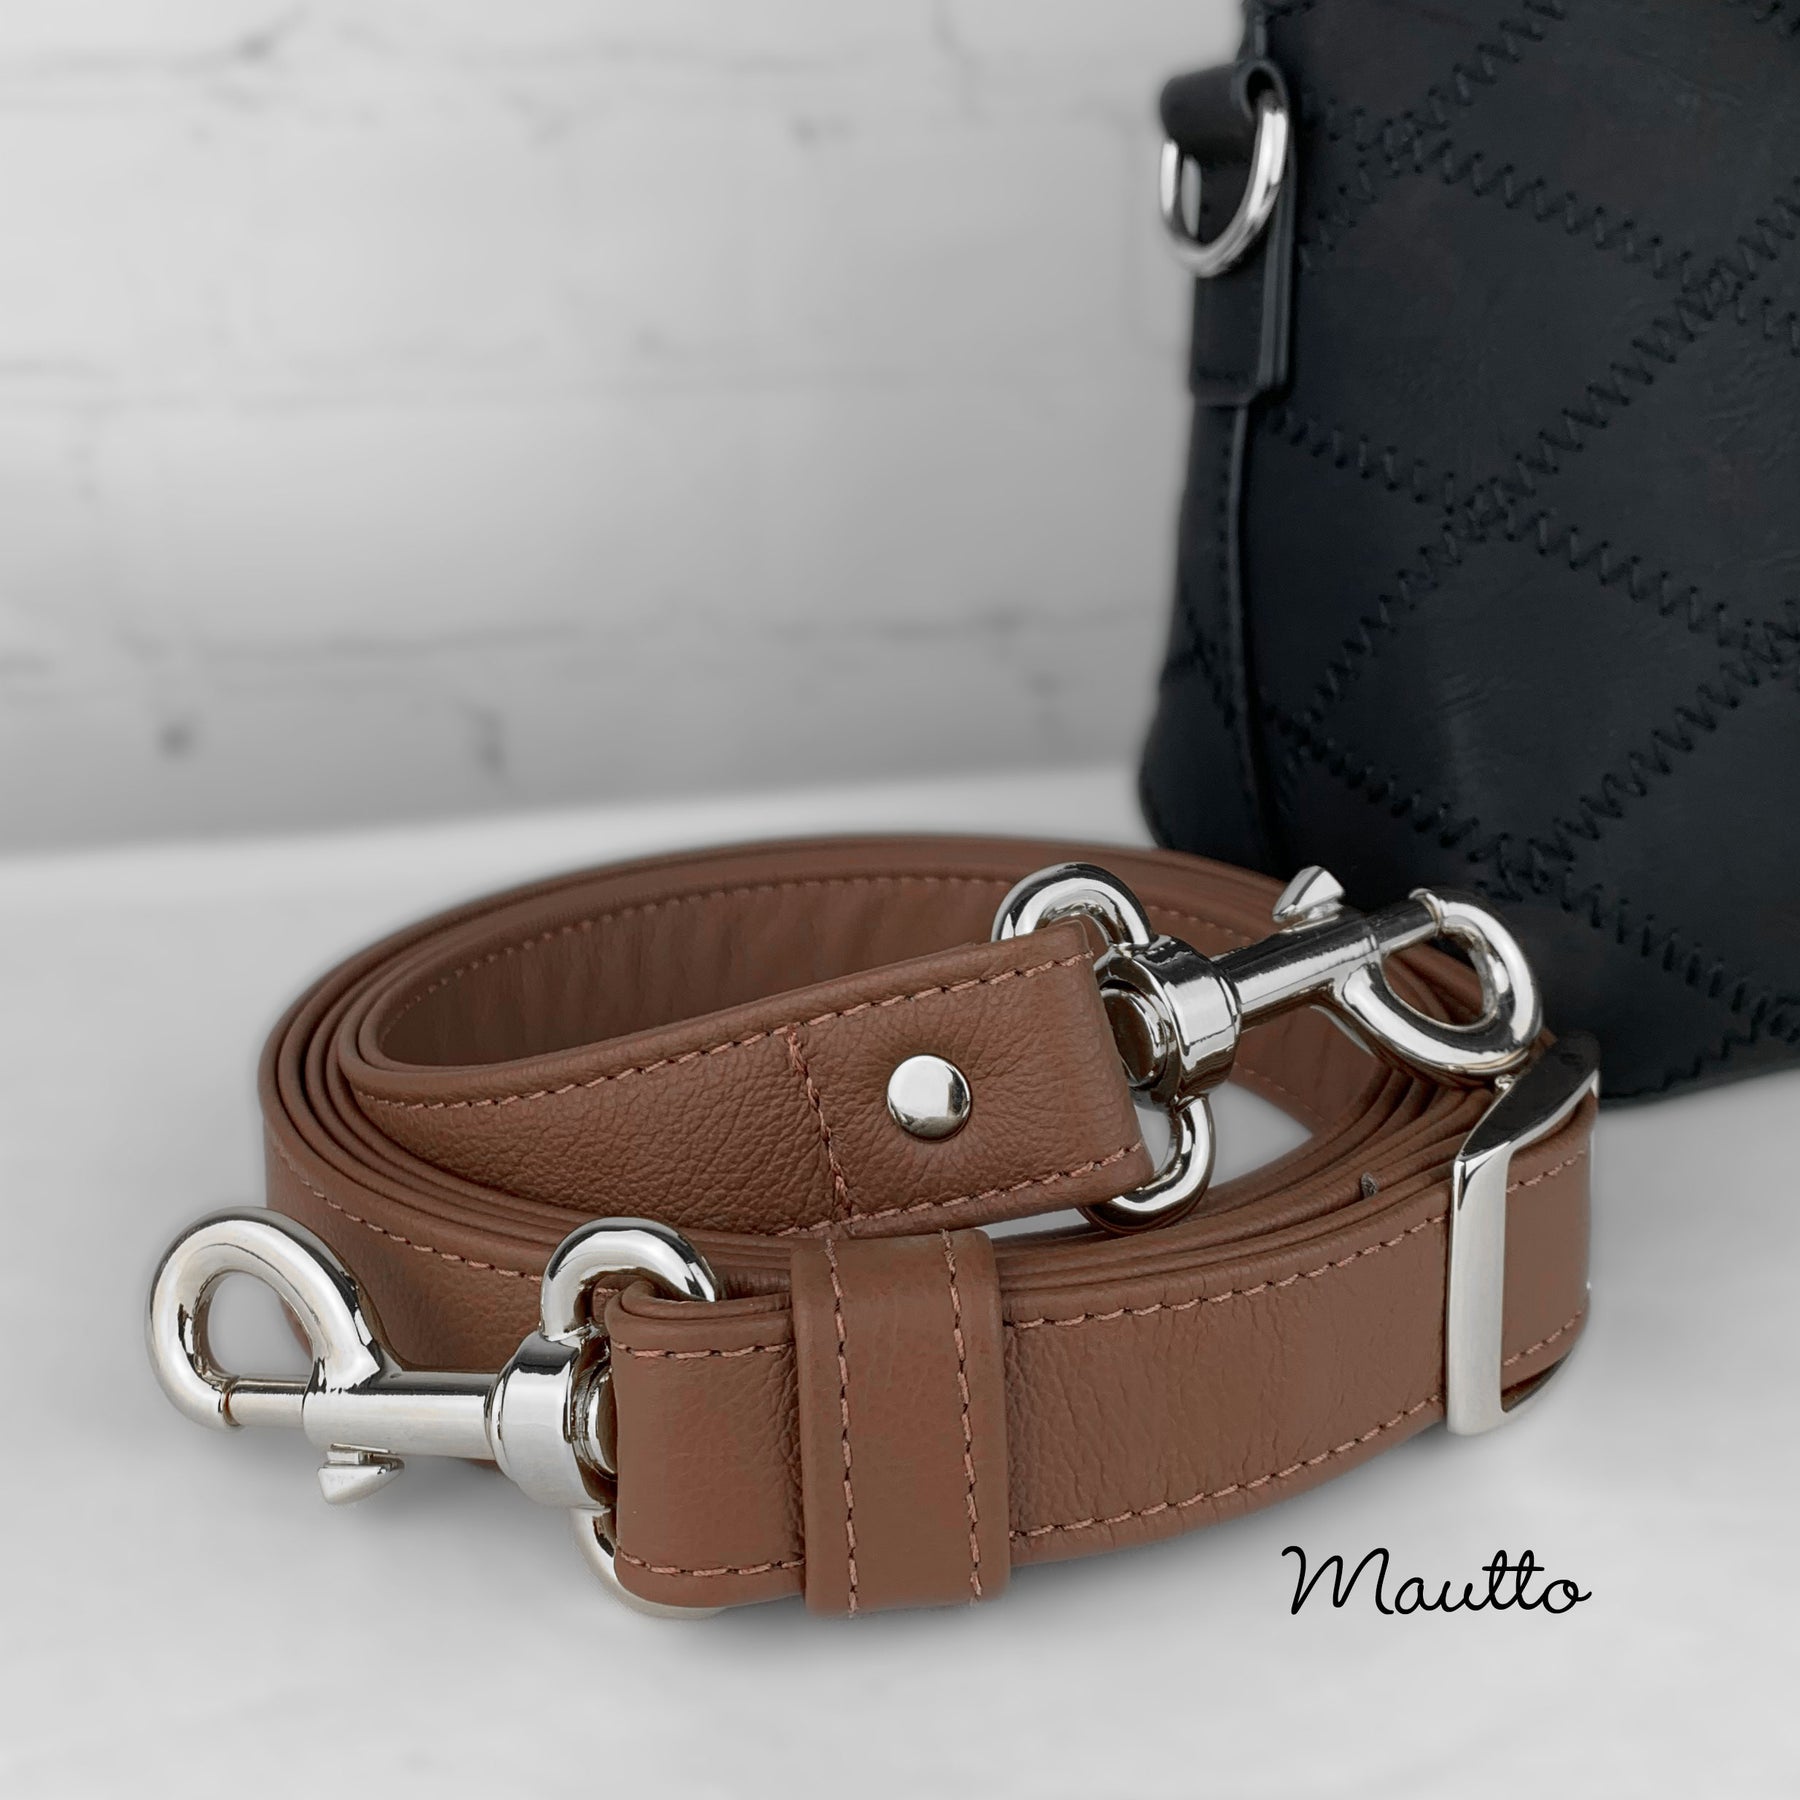 MauttoAccessories Leather Wrist Strap Accessory